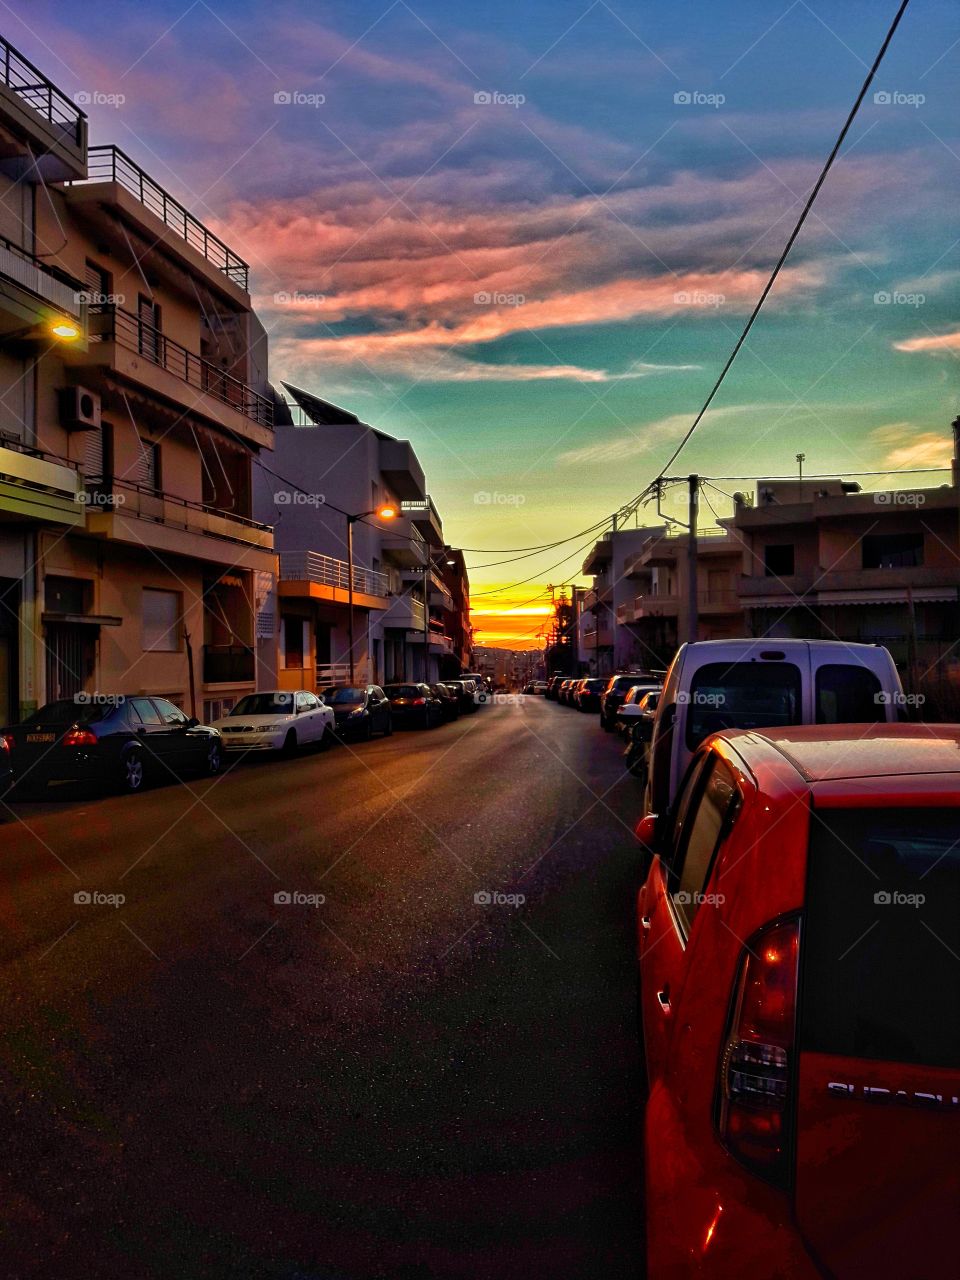 Sunrise in Heraklion of Crete.